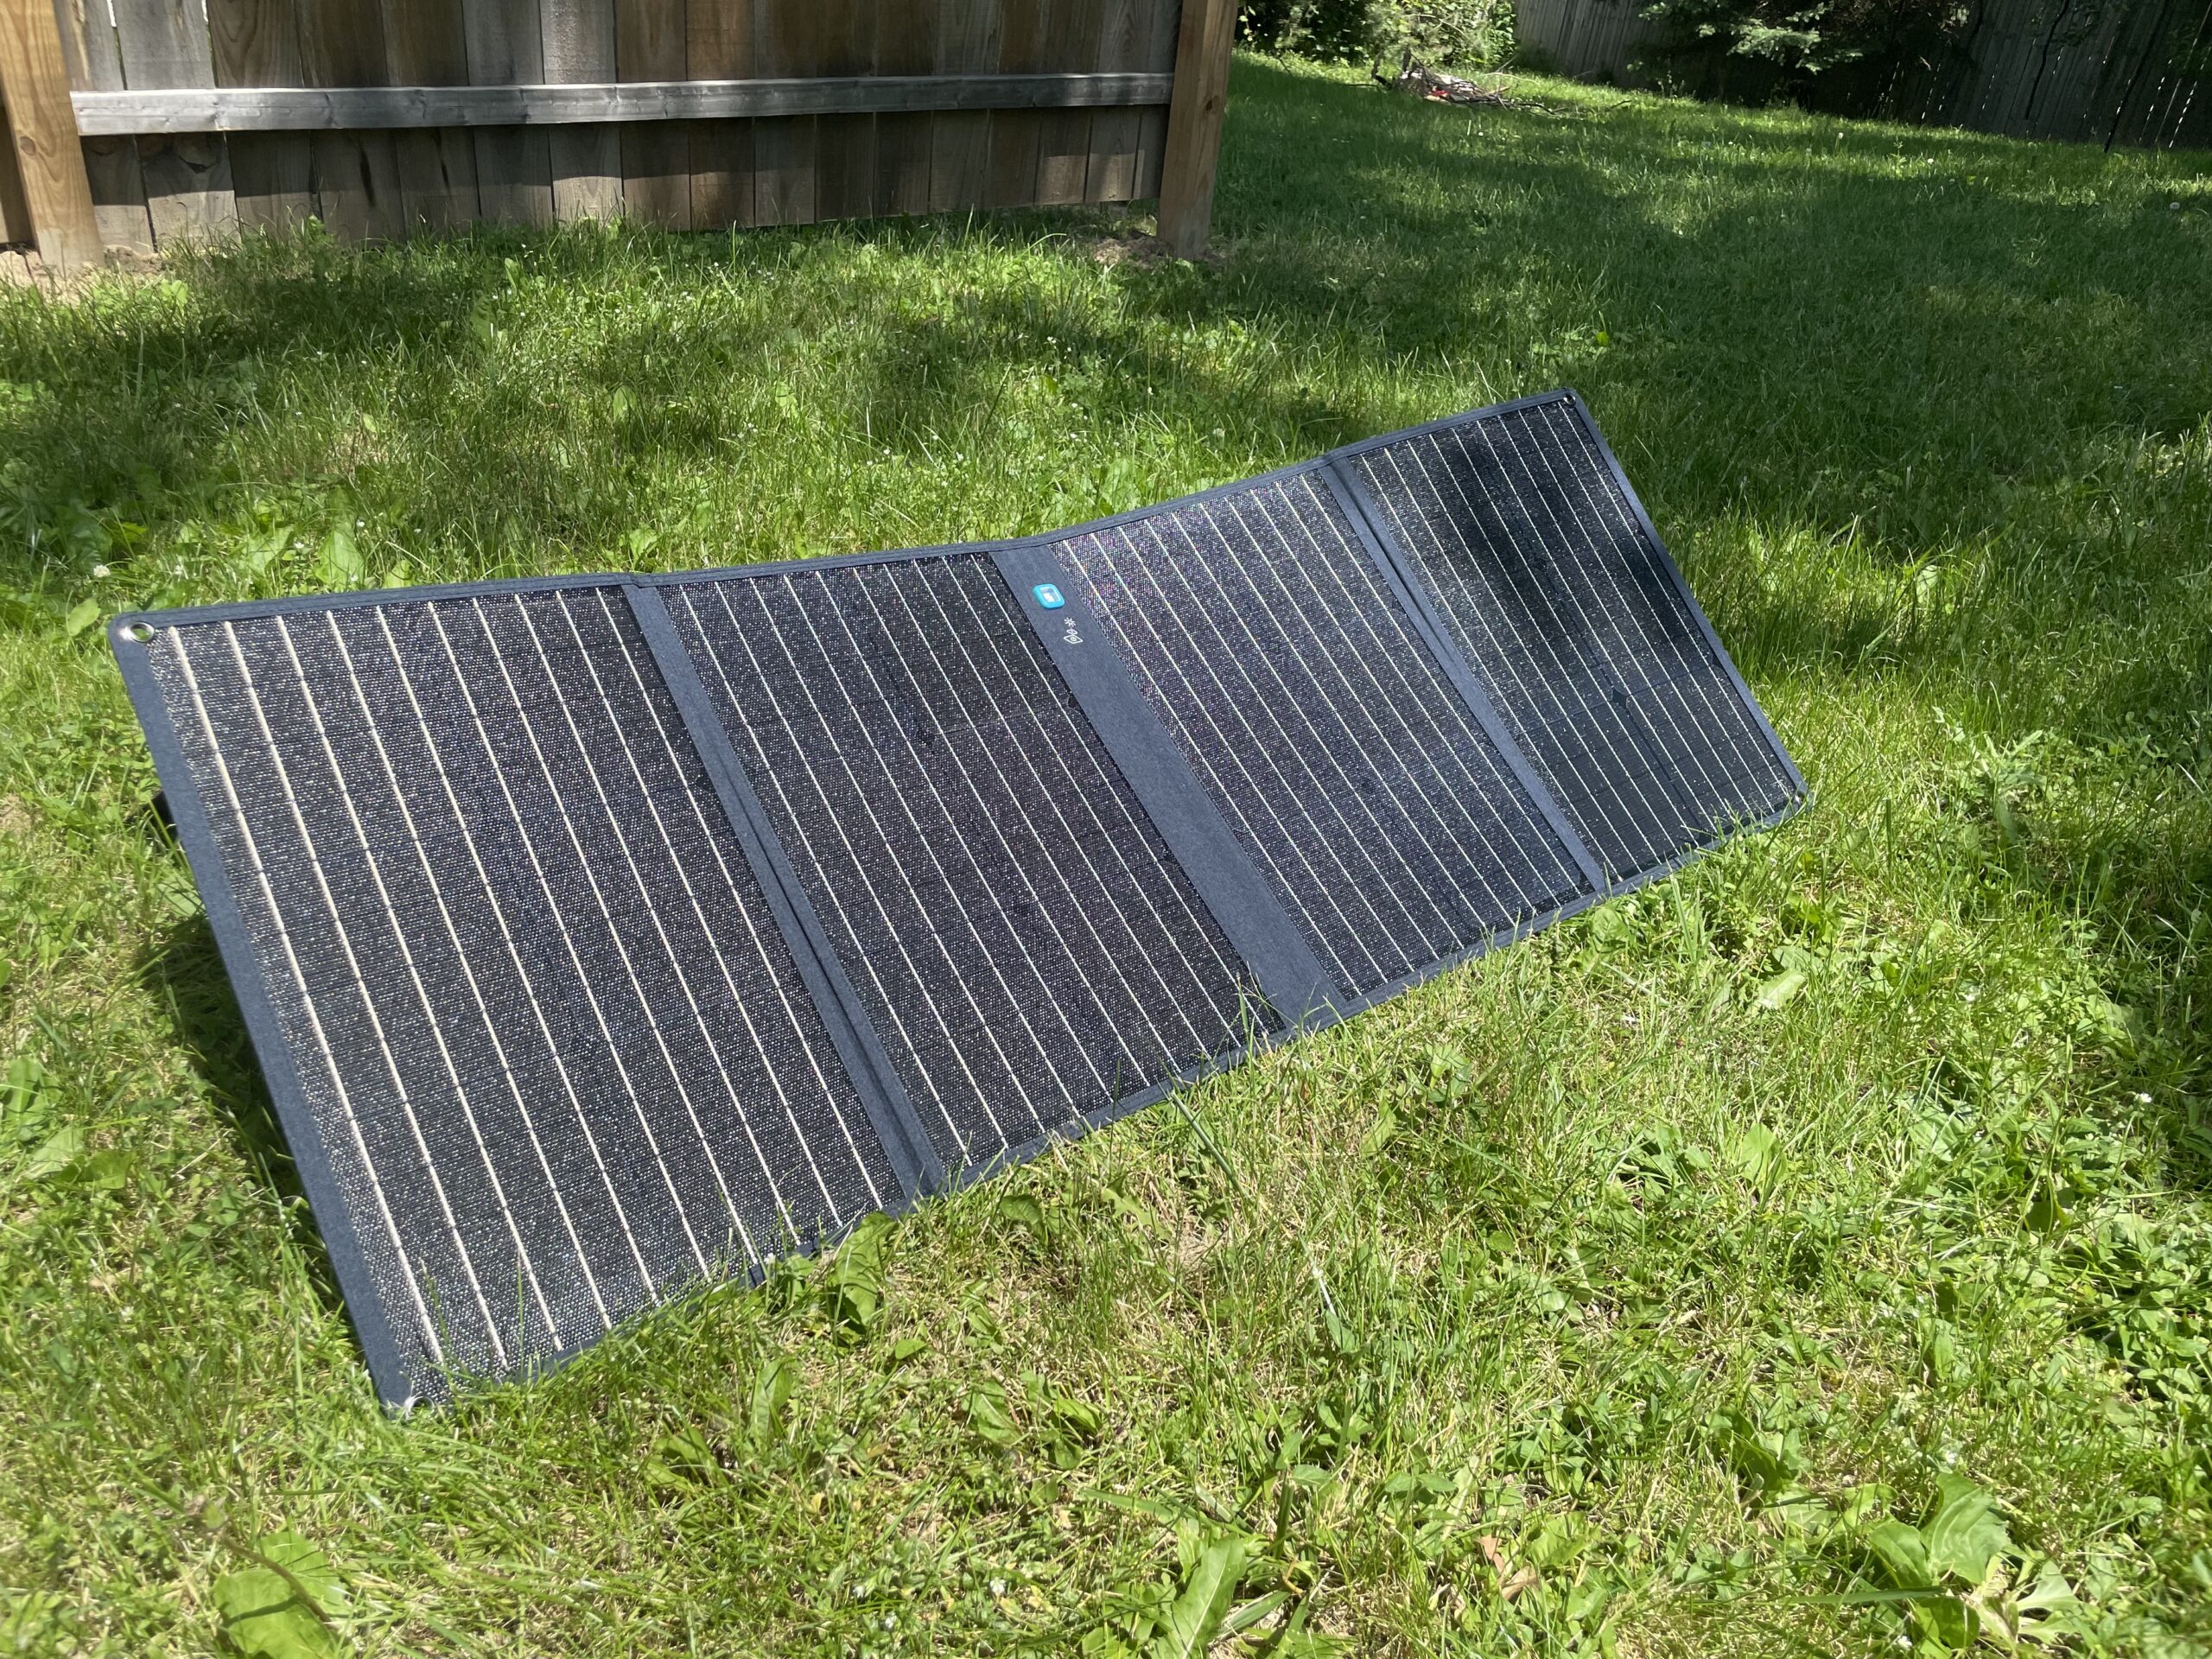 anker 625 solar panels